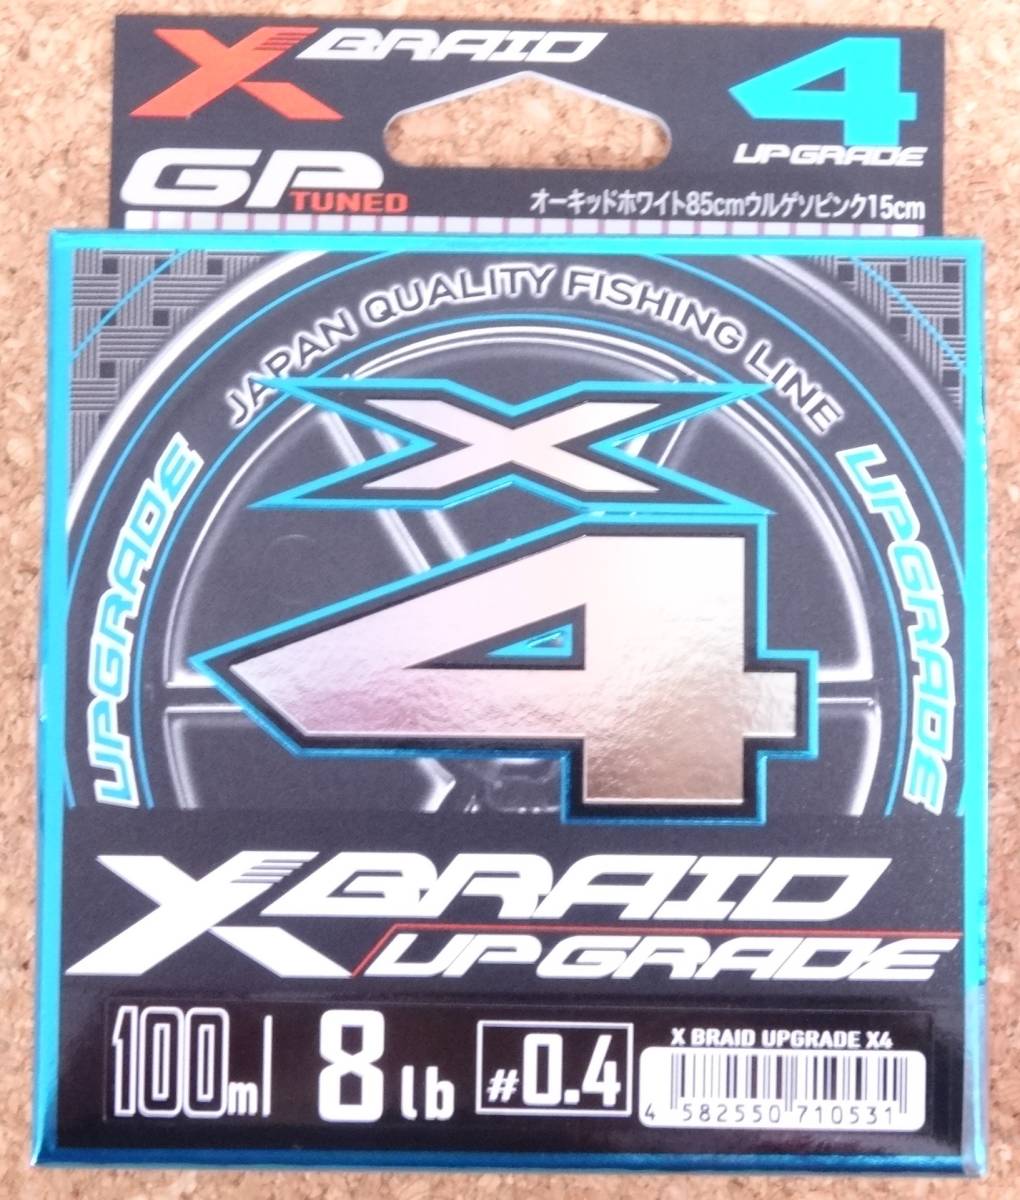  быстрое решение YGK Yoz-Ami X Blade выше комплектация X4 100m 0.4 номер 8lb XBRAID UPGRADE X4 PE линия 